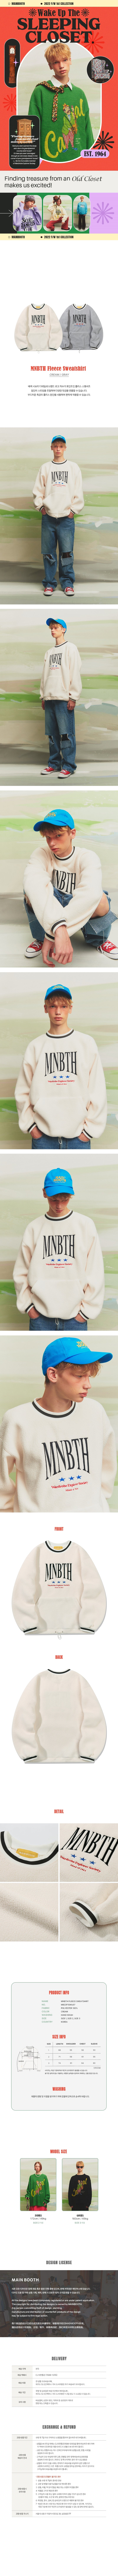 MNBTH Fleece Sweatshirt(CREAM)